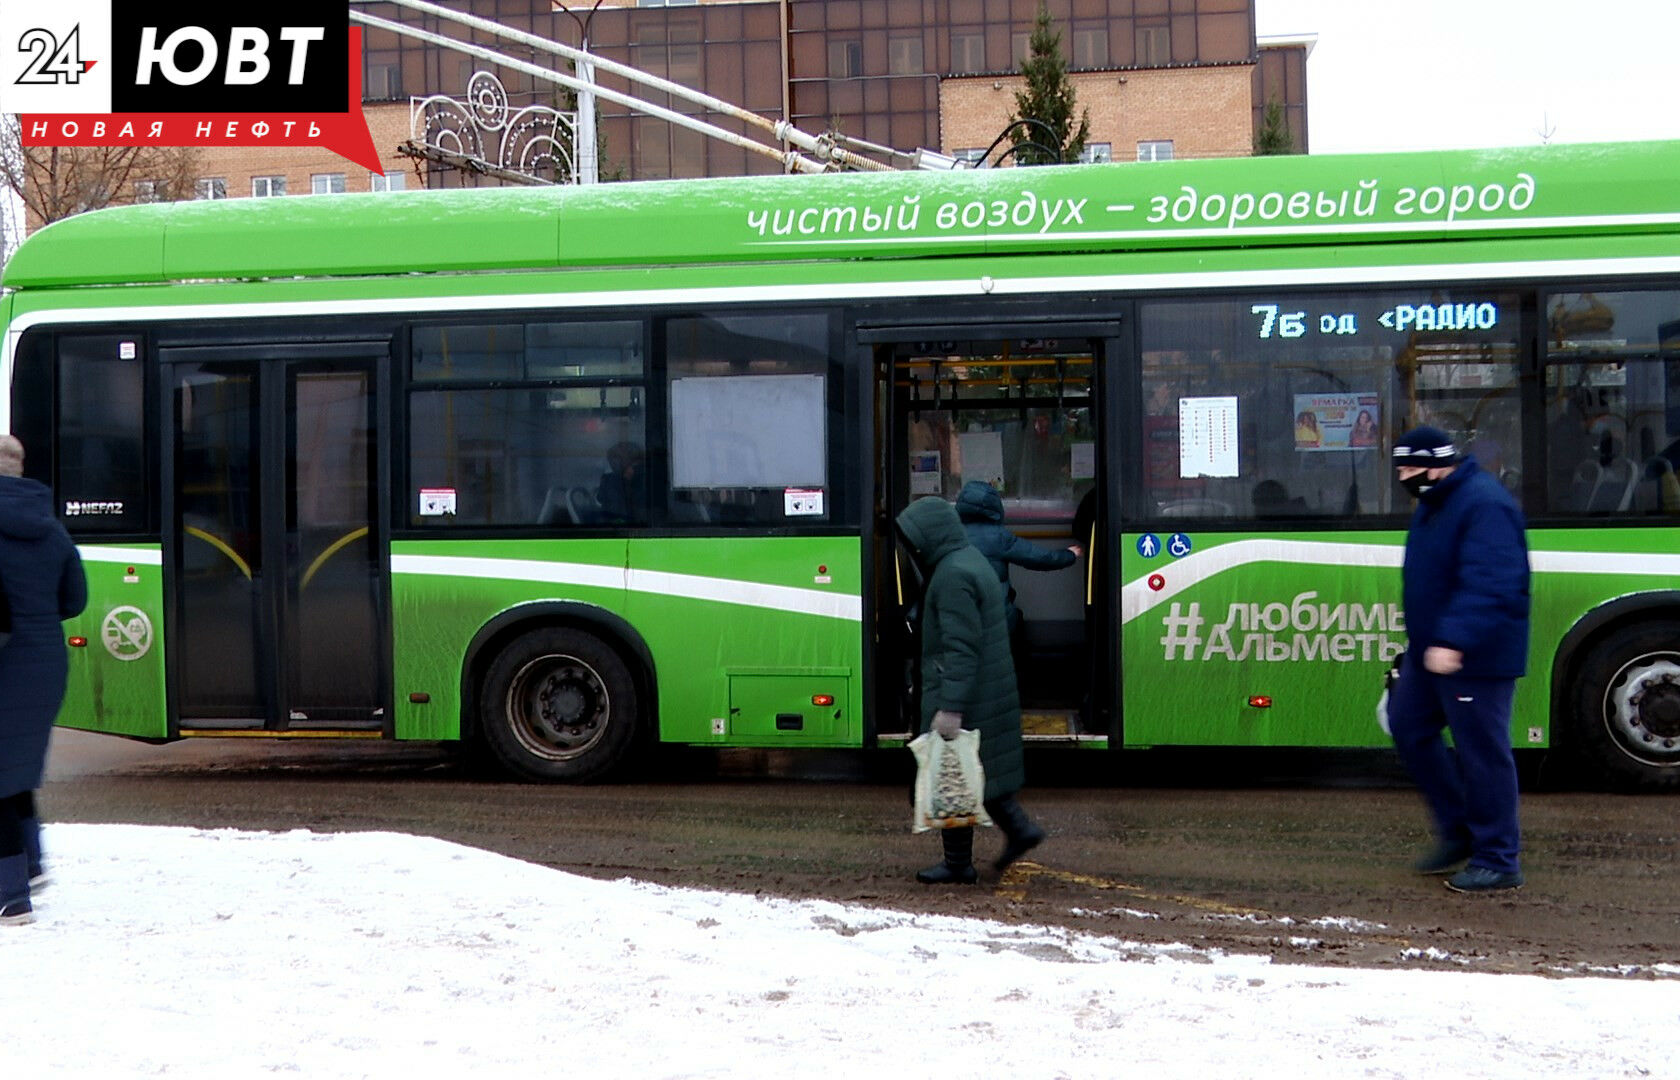 Дмитрий Песков о QR-кодах в общественном транспорте: Надеемся, что скоро ситуация выровняется